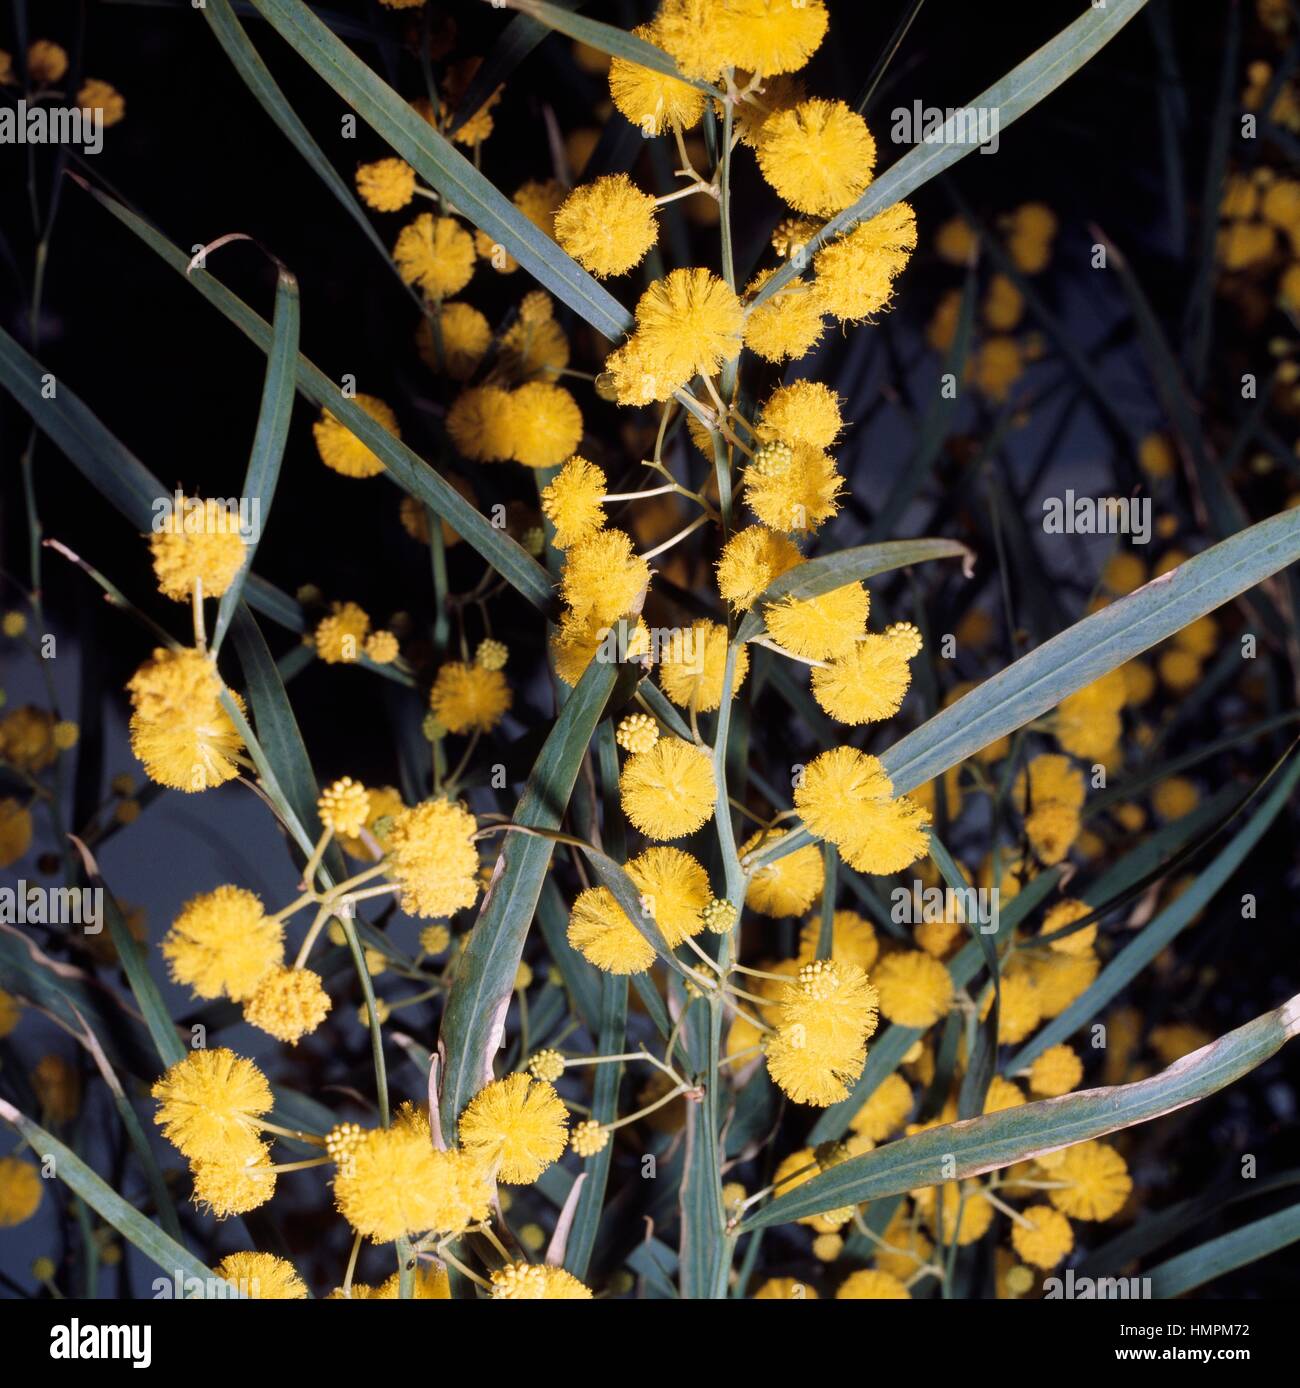 Long-leaved wattle or Sydney golden wattle (Acacia longifolia), Fabaceae. Stock Photo